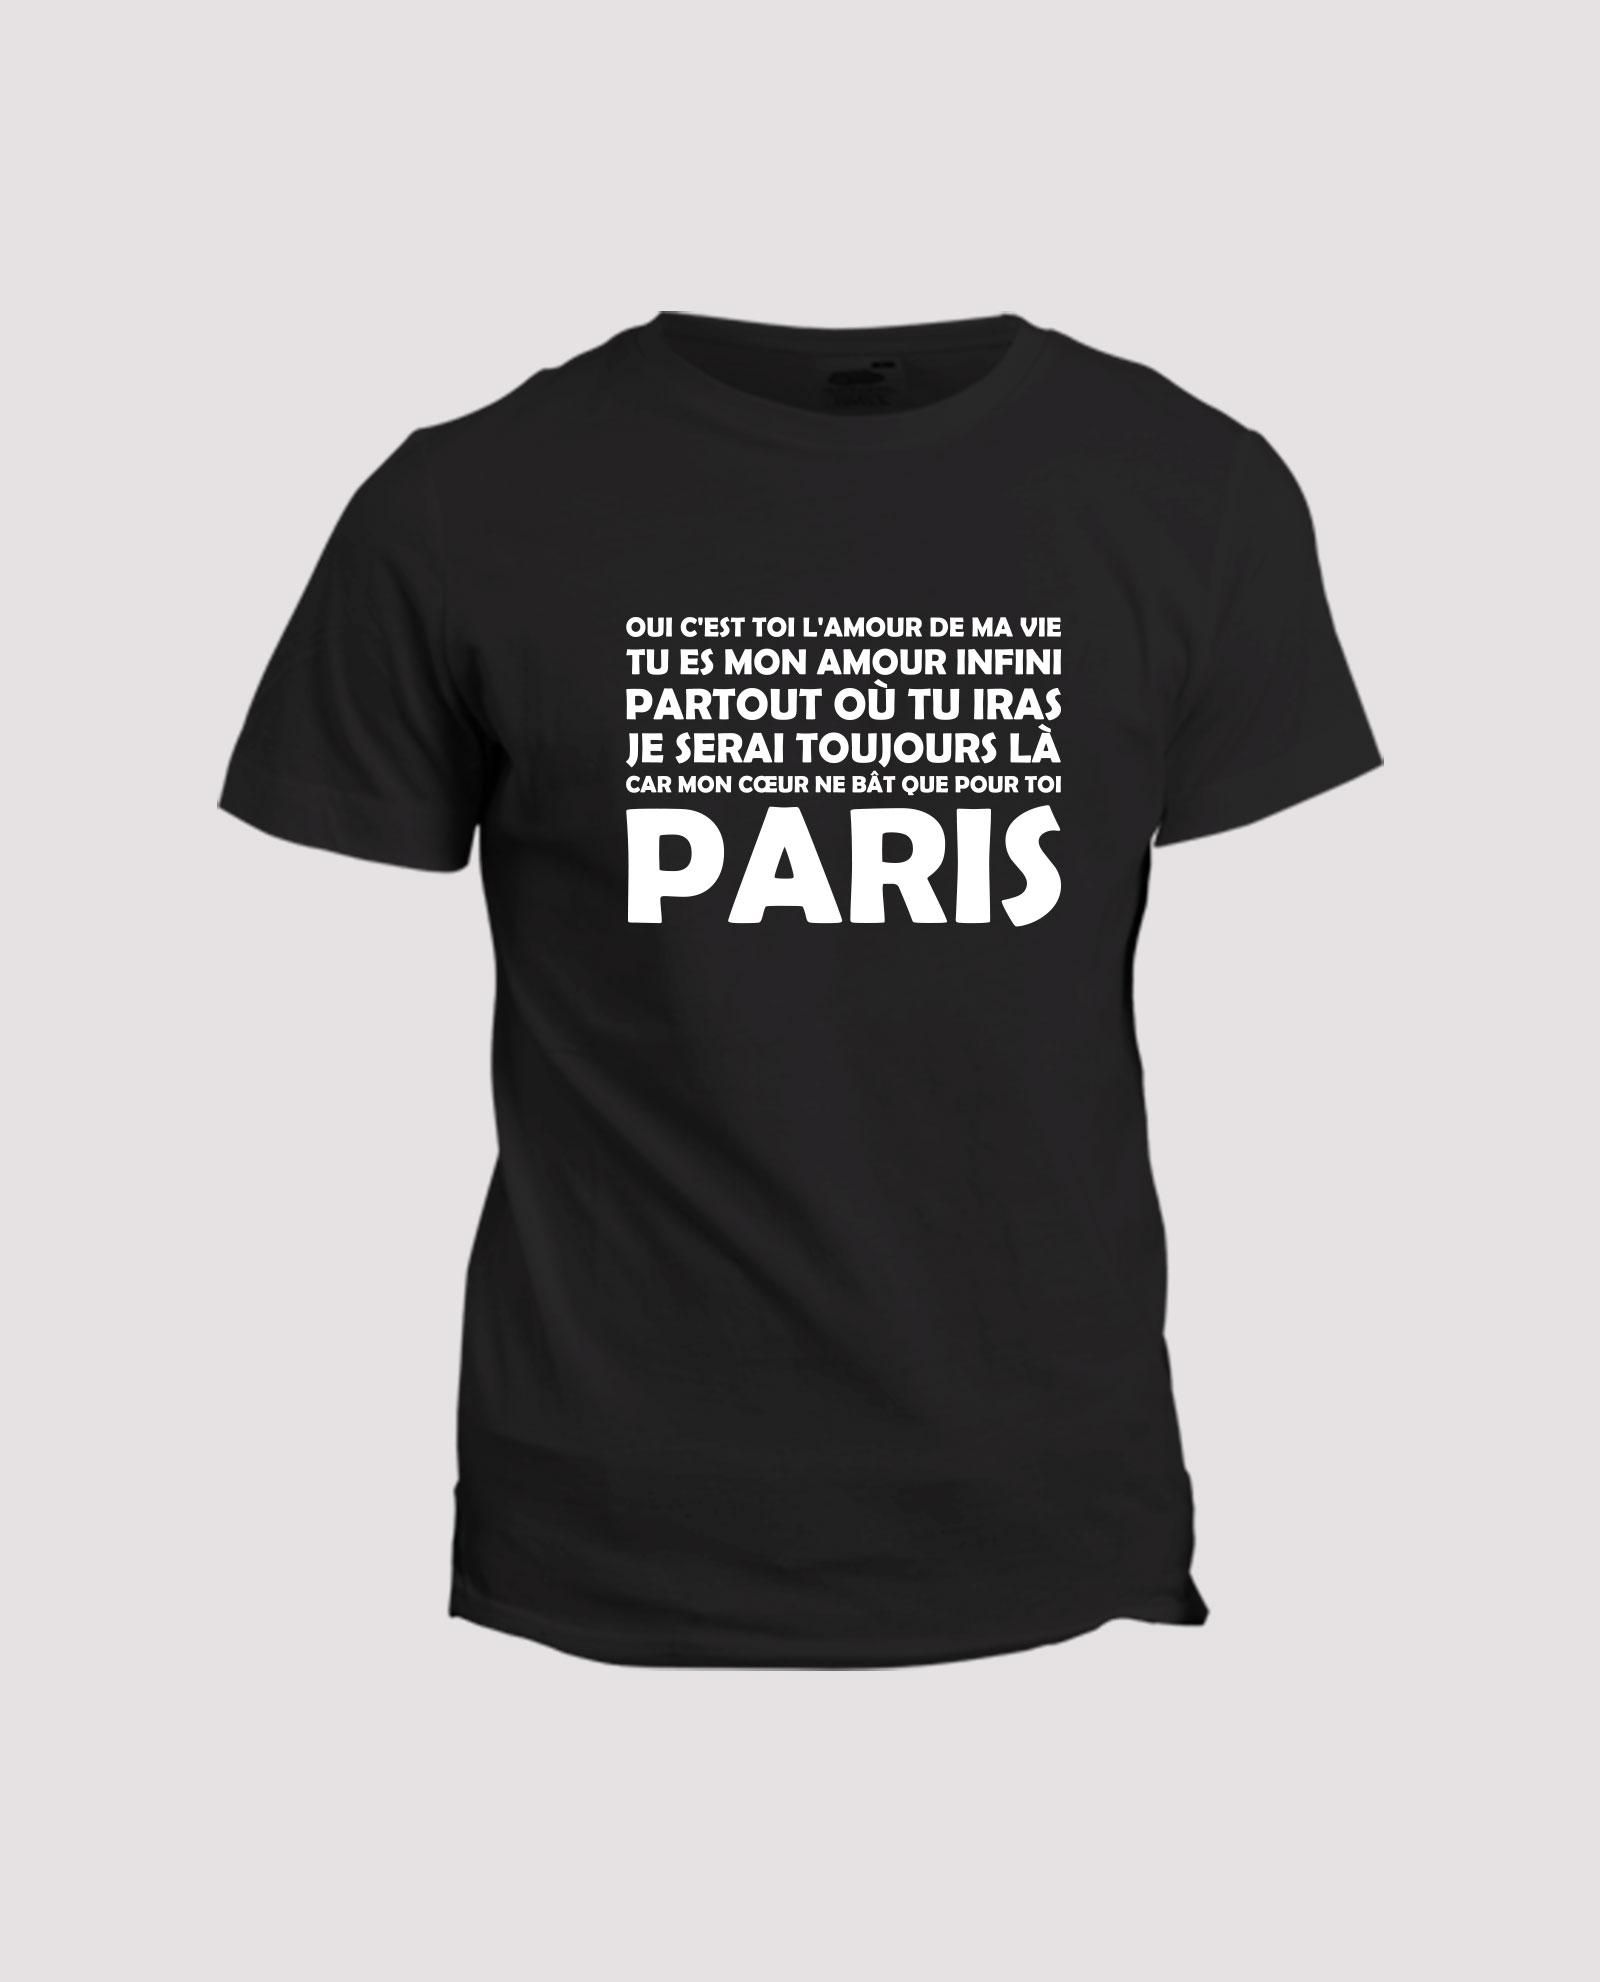 la-ligne-shop-t-shirt-chant-supporter-de-football-psg-paris-amour-infini-parisien